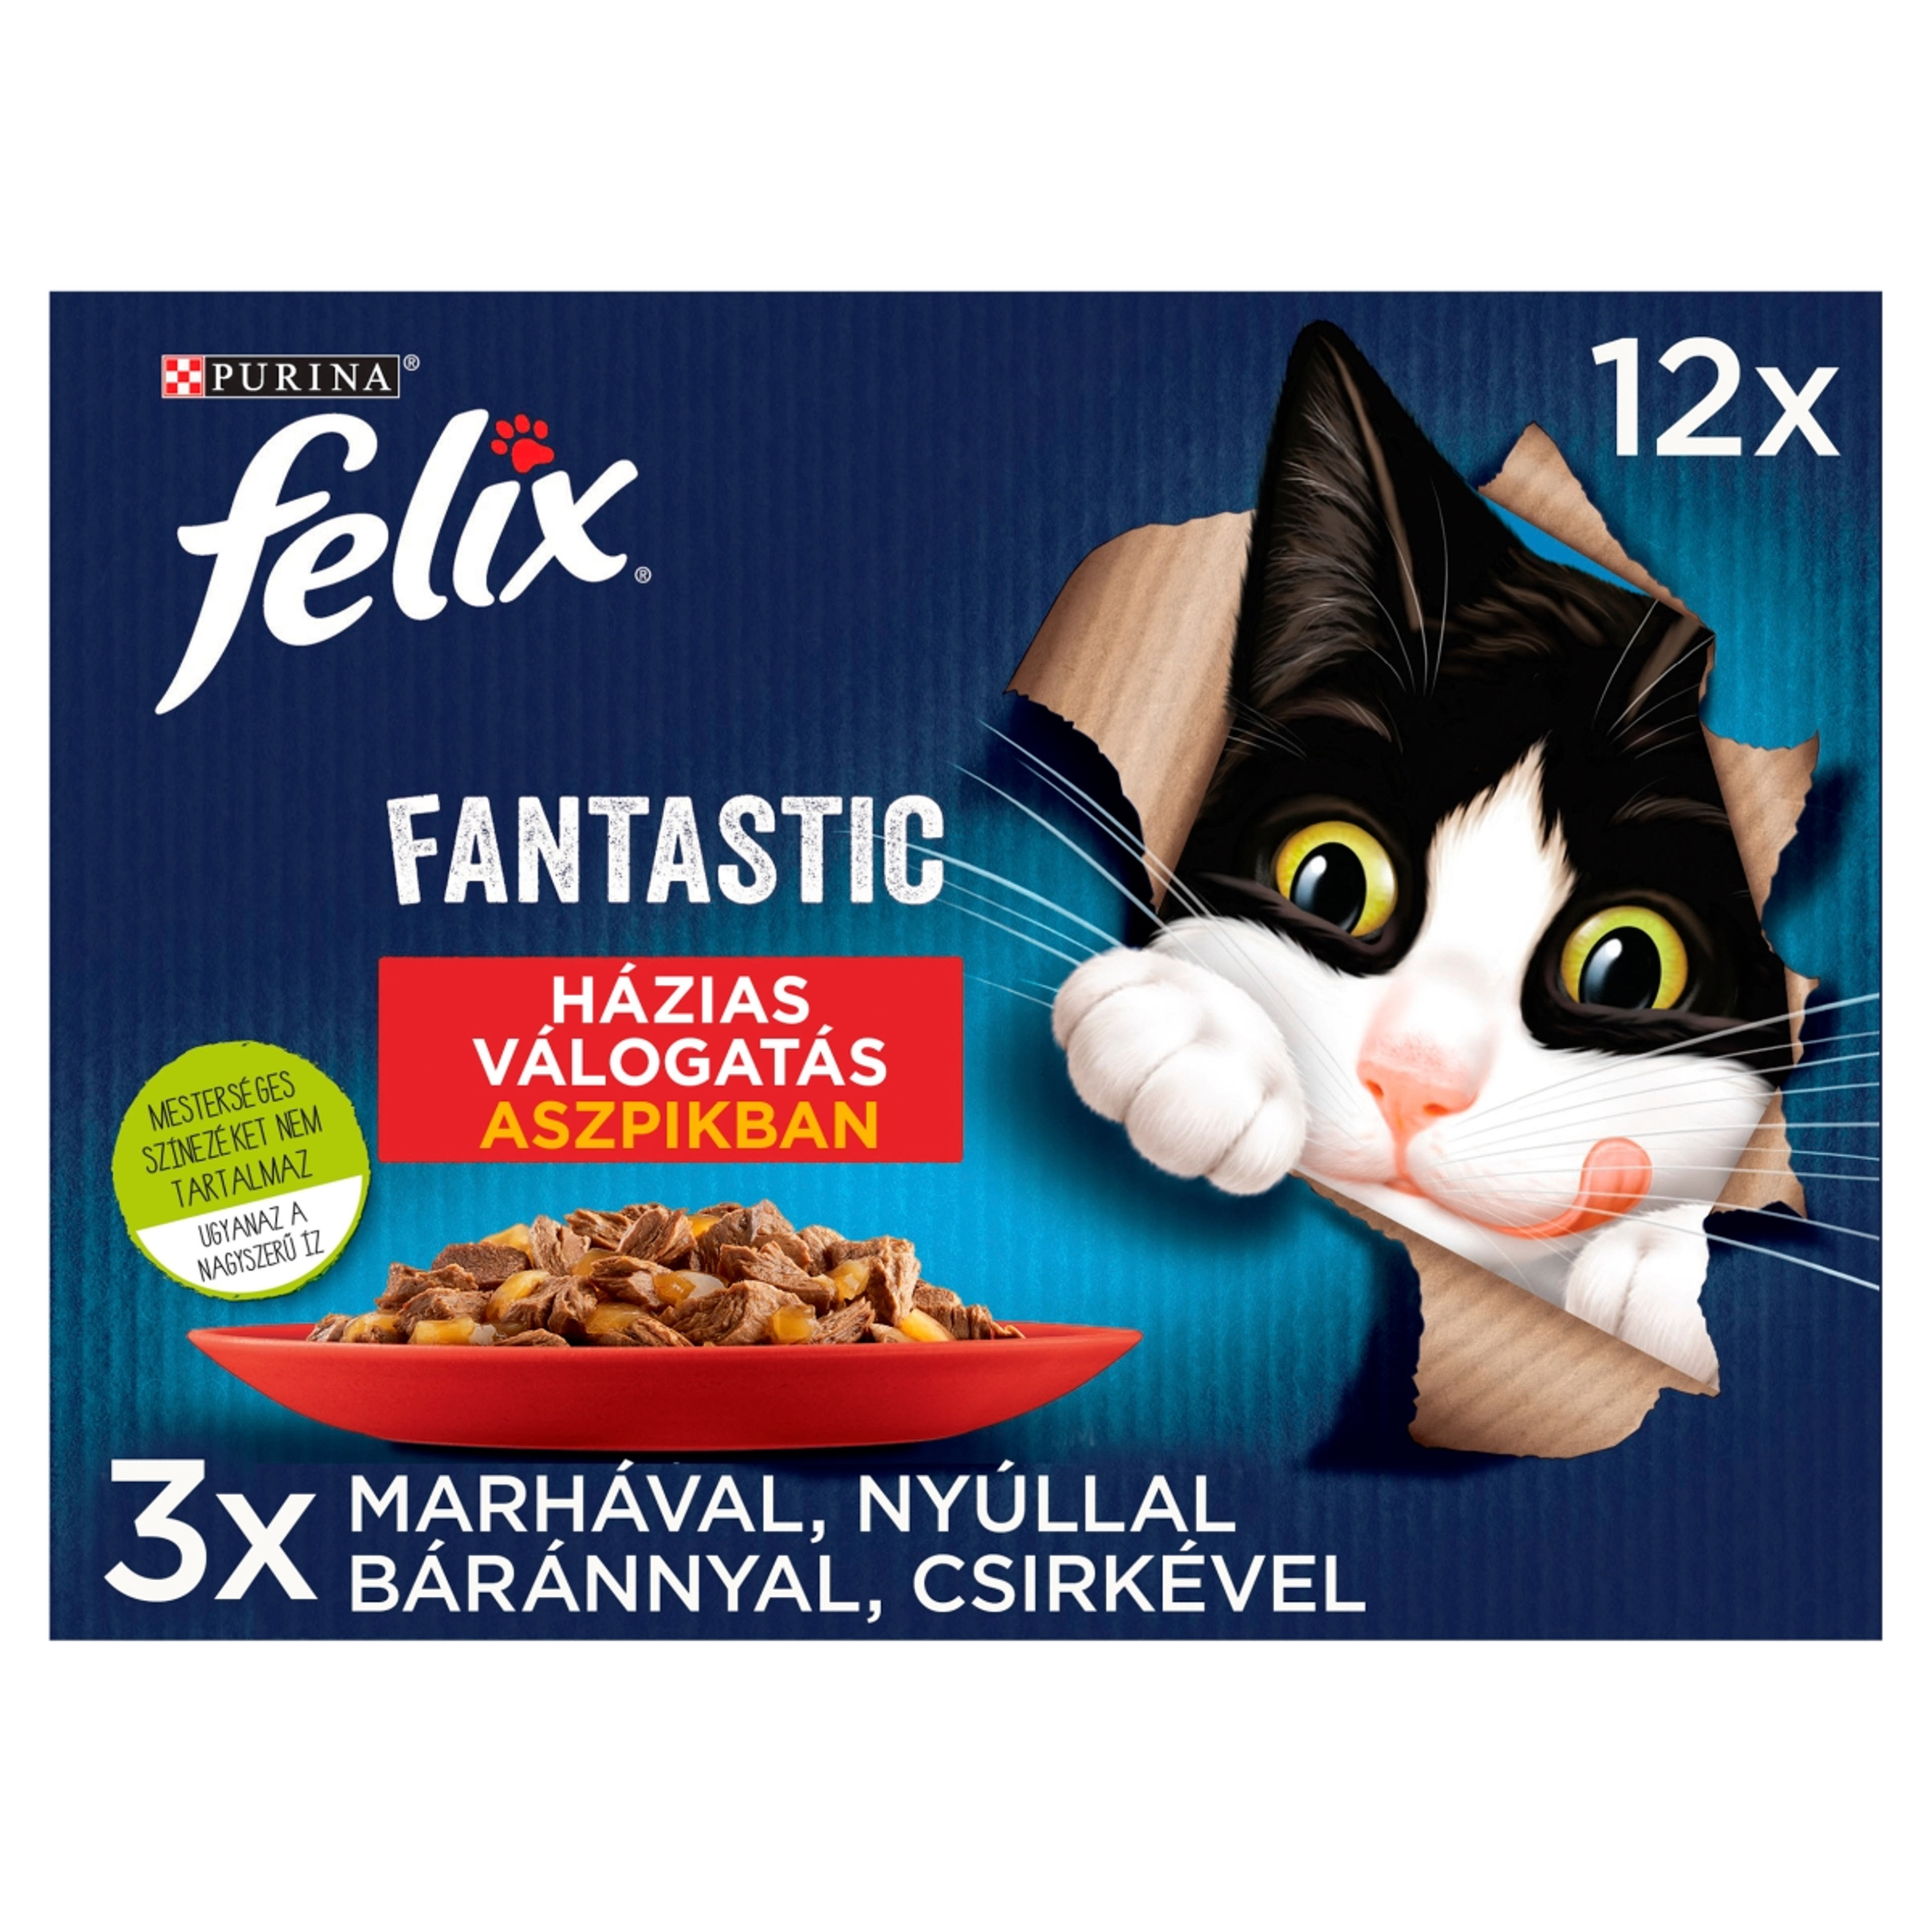 Felix Fantastic Házias Válogatás aszpikban nedves macskaeledel 12 x 85 g - 1020 g-2